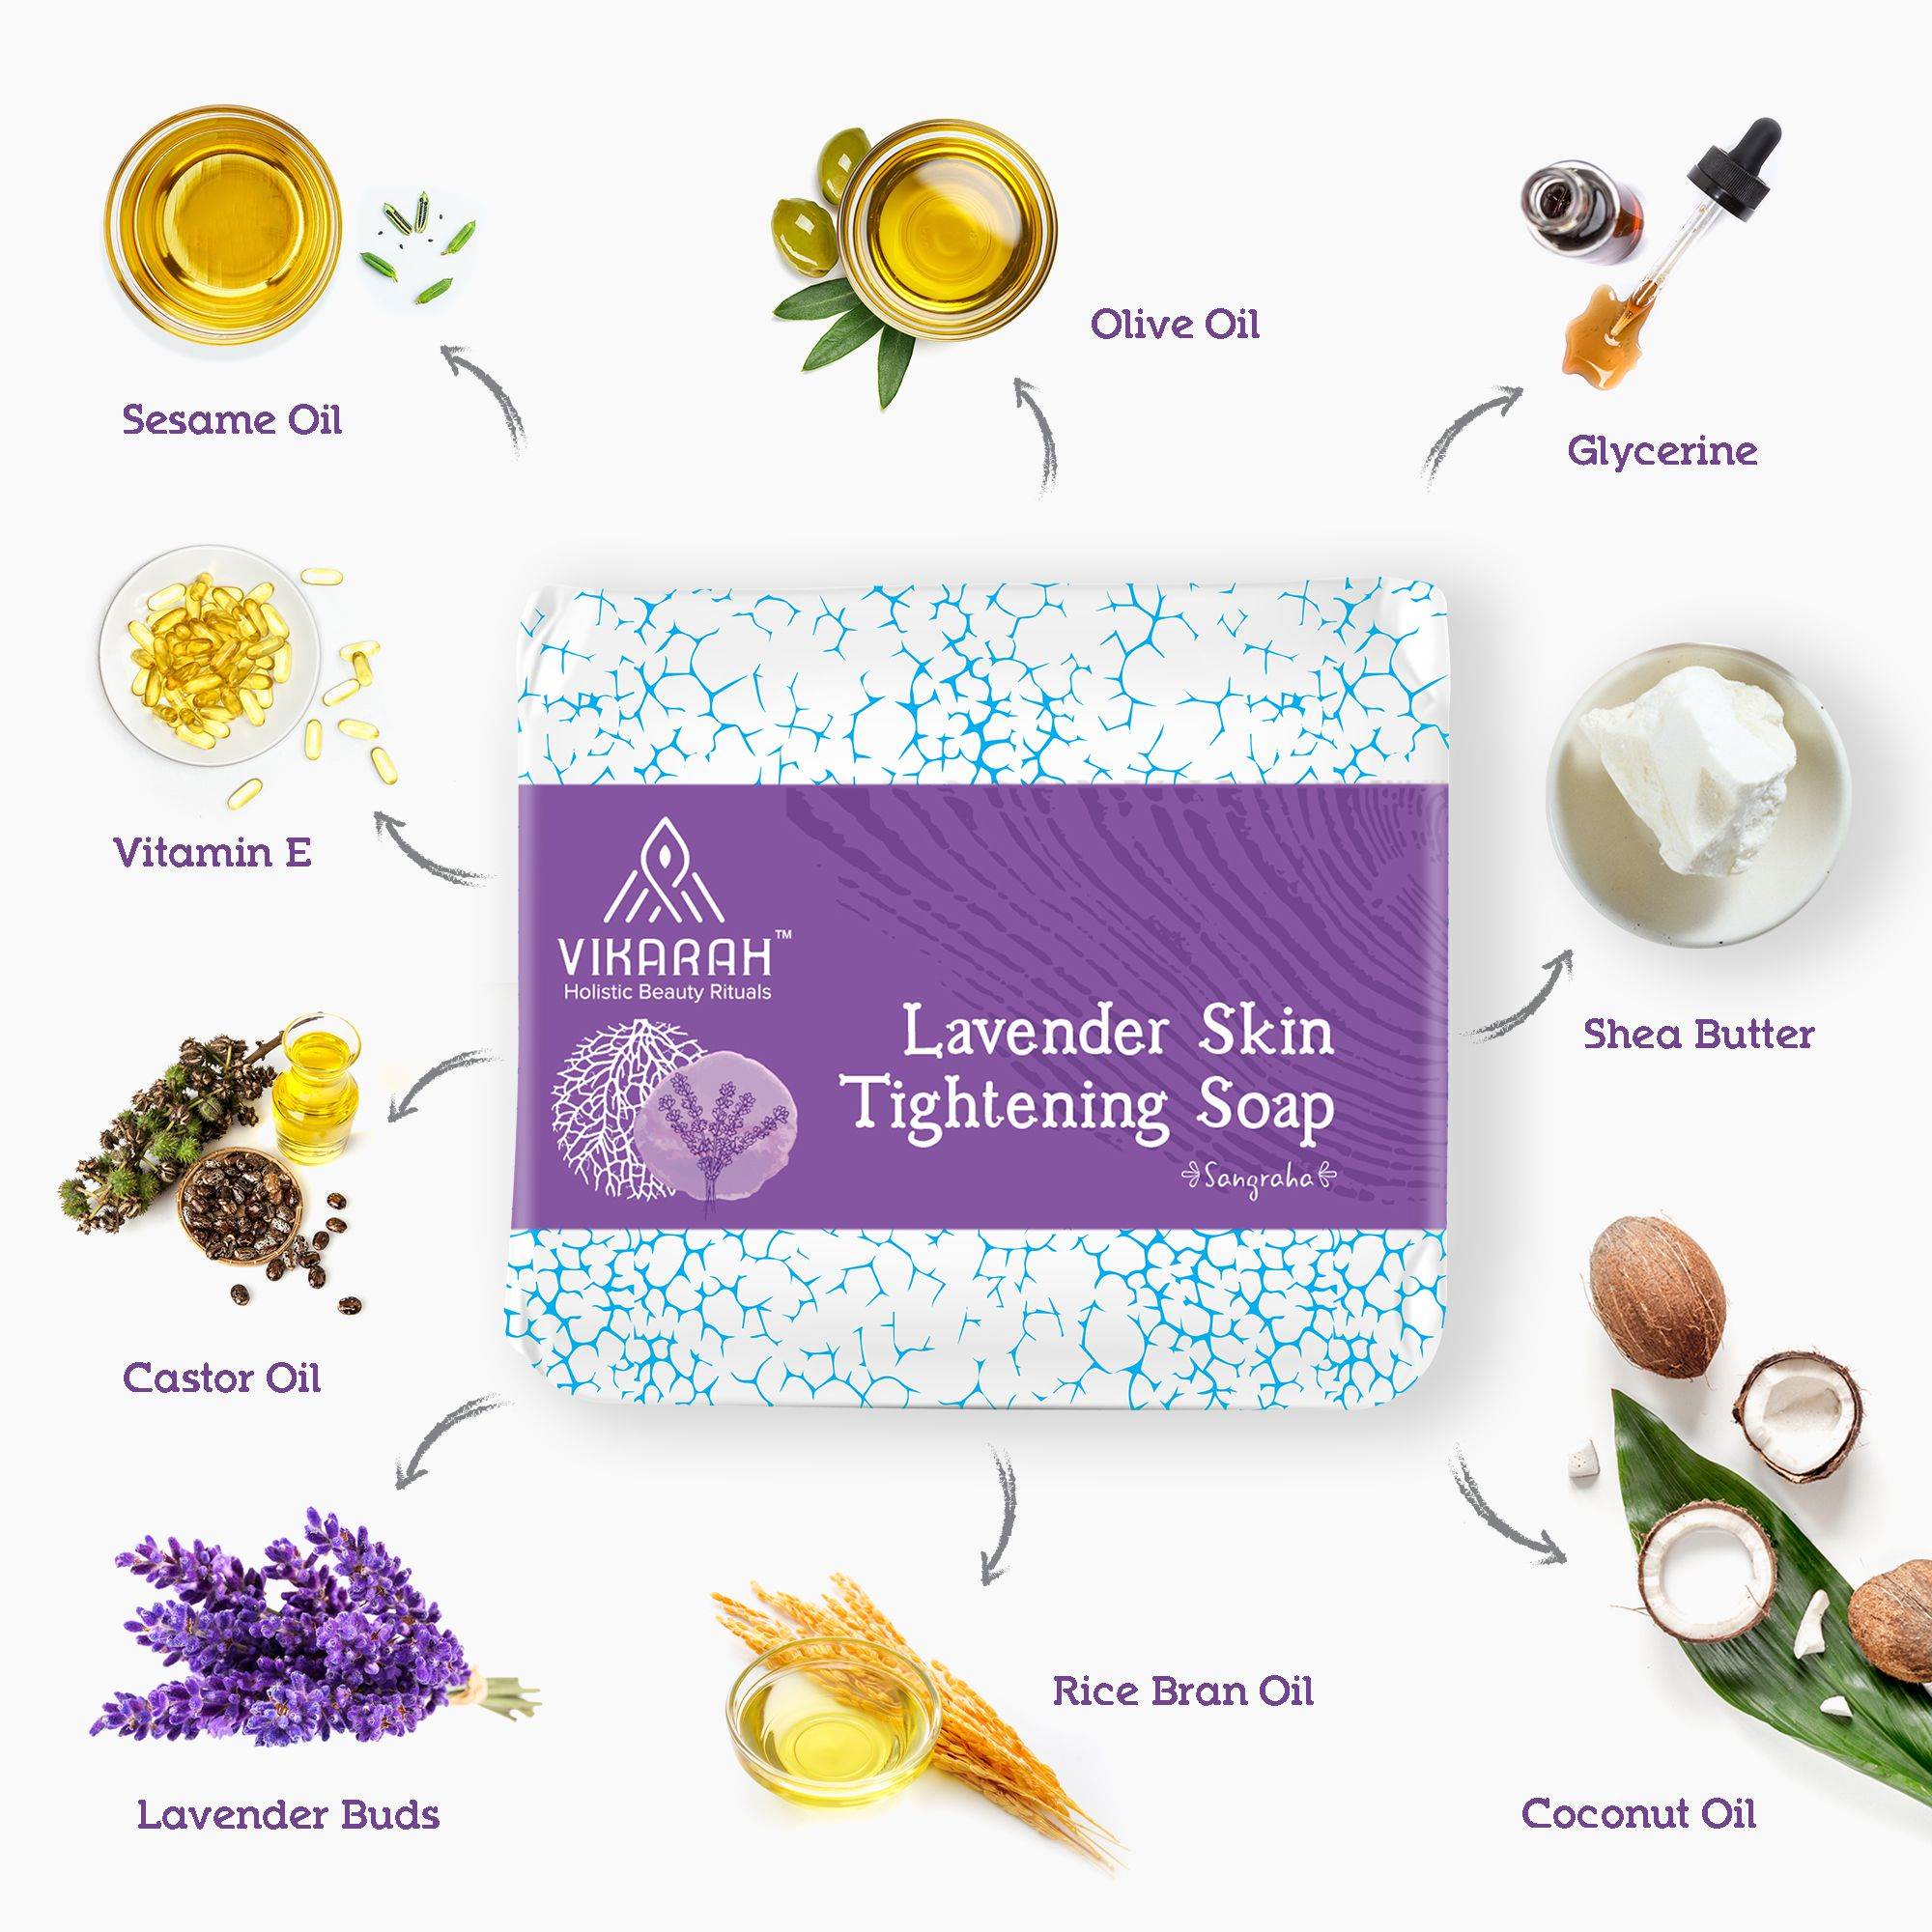 Lavender Skin Tightening Soap